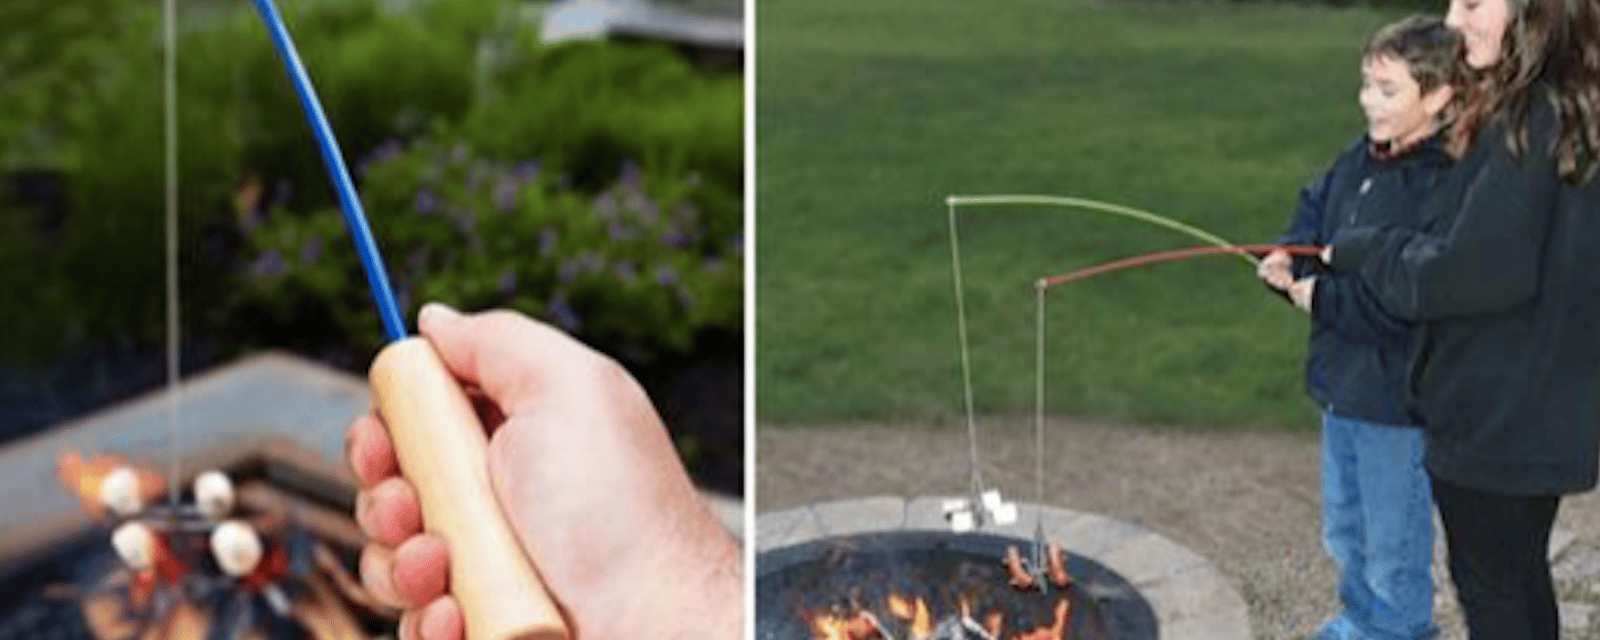 Le must de l’été: une « canne à pêche » pour cuire les guimauves et les saucisses sur le feu de camp